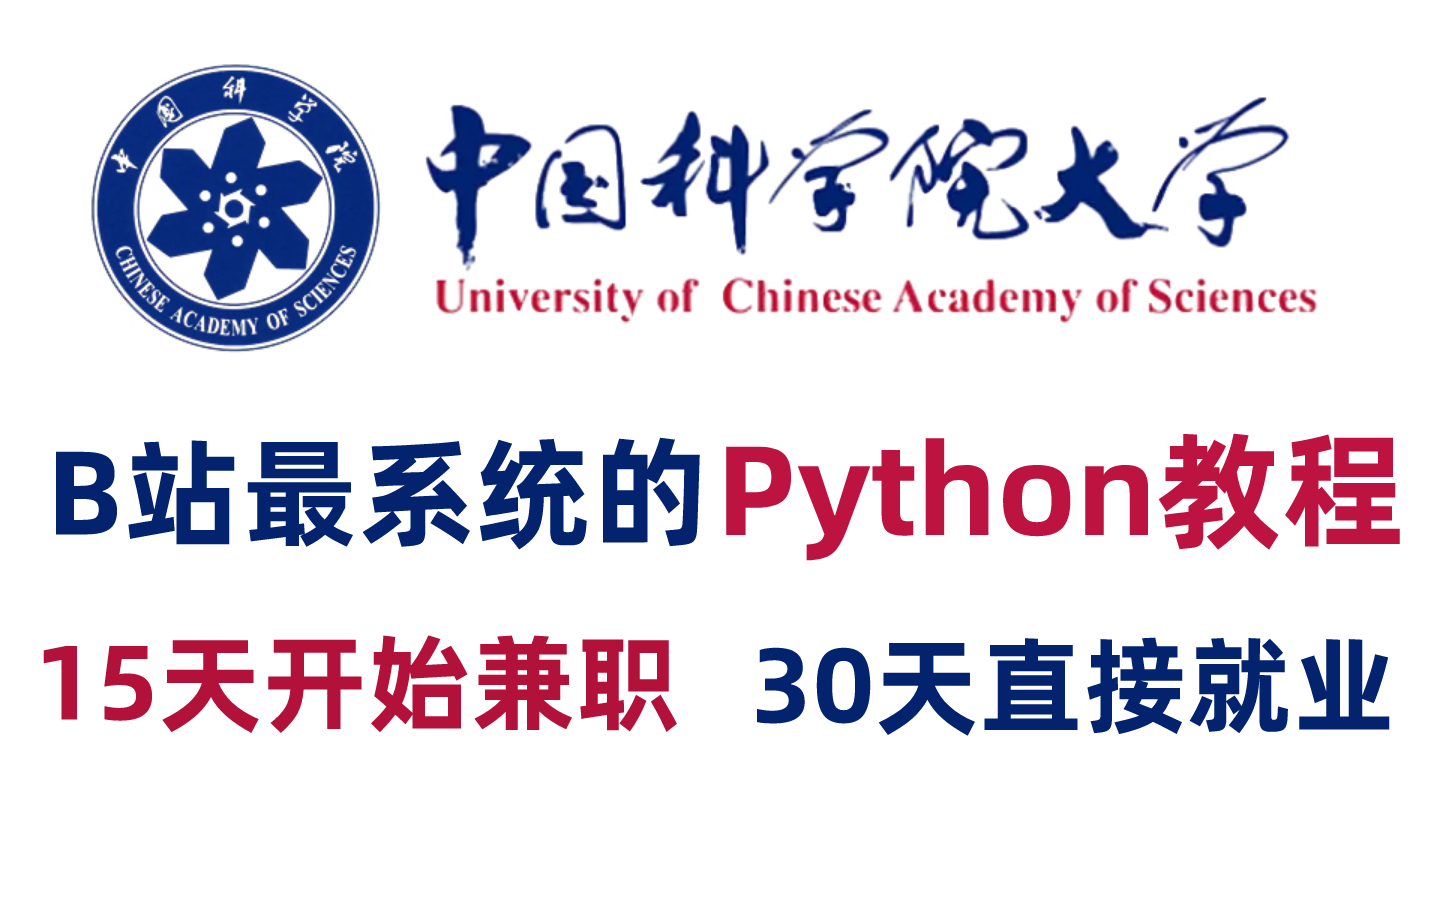 【全套300集】中国科学院大佬60天讲完的Python教程，全程干货无废话！学完秒变大神，这还学不会我退出IT界！零基础入门+数据分析/可视化